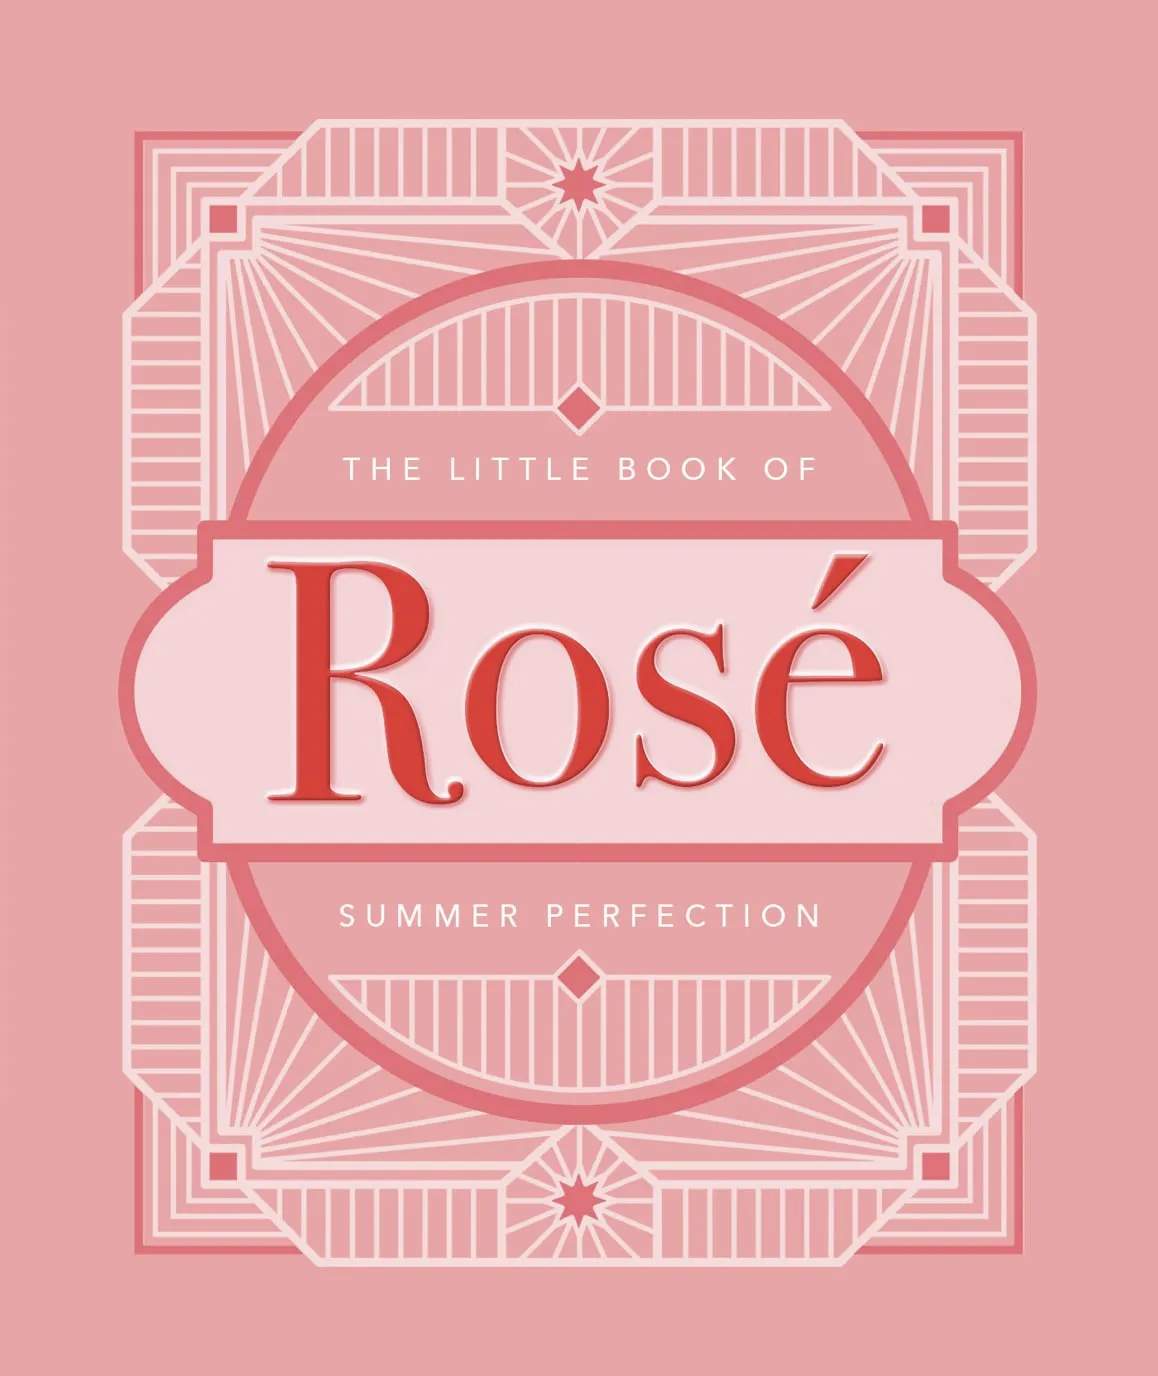 New Mags øvrige bøger The Little Book of Rosé